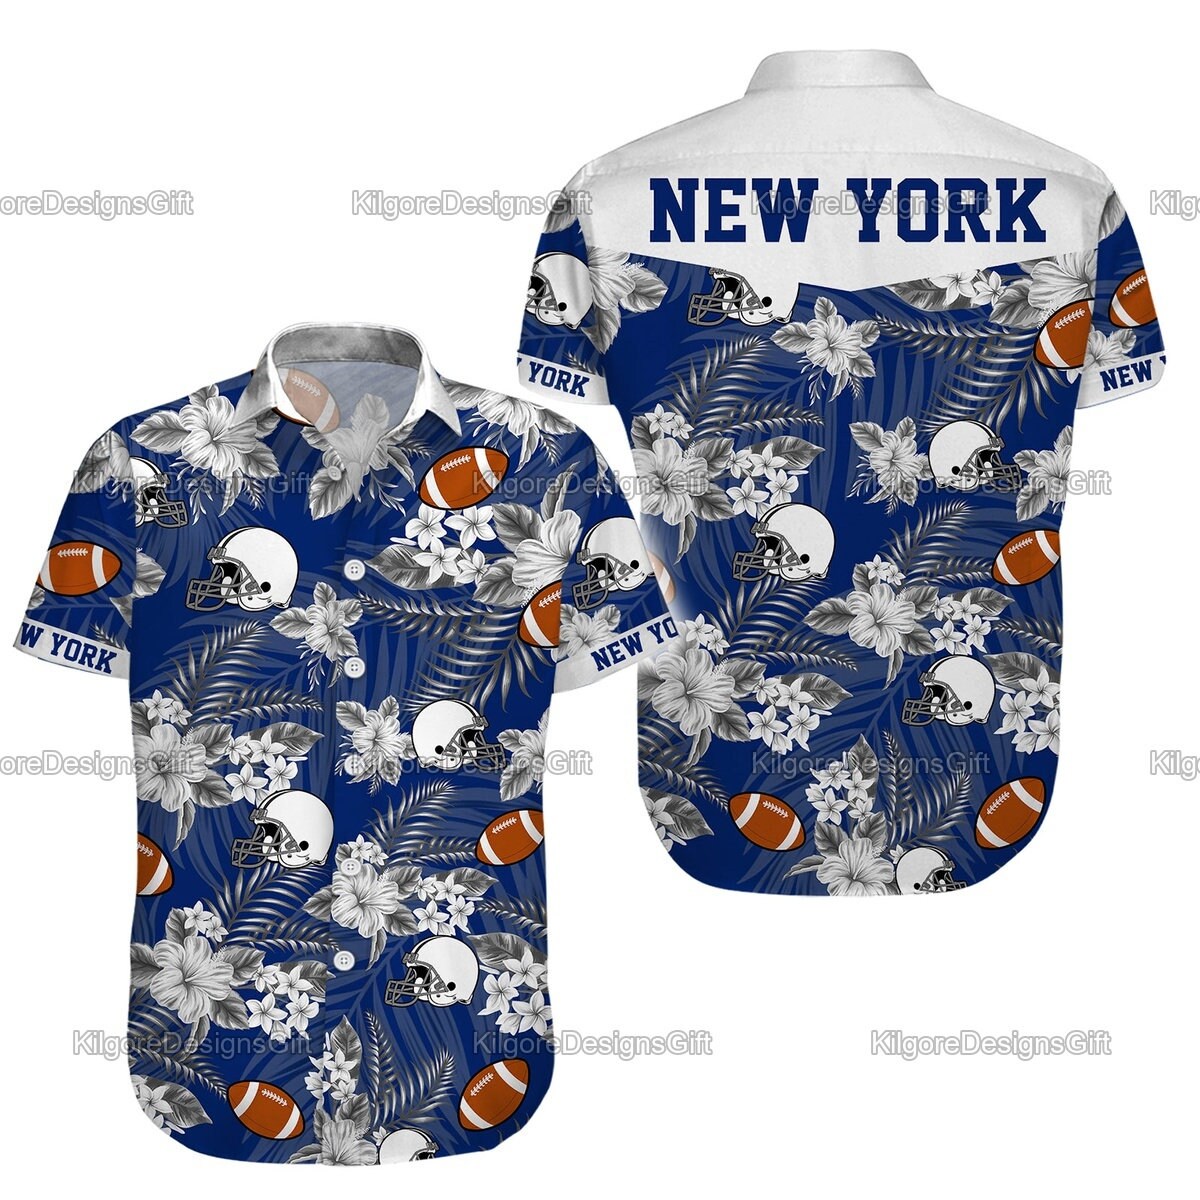 New York Yankees Hawaiian Shirt, New York Shirts, New York Yankees Beach Shirt